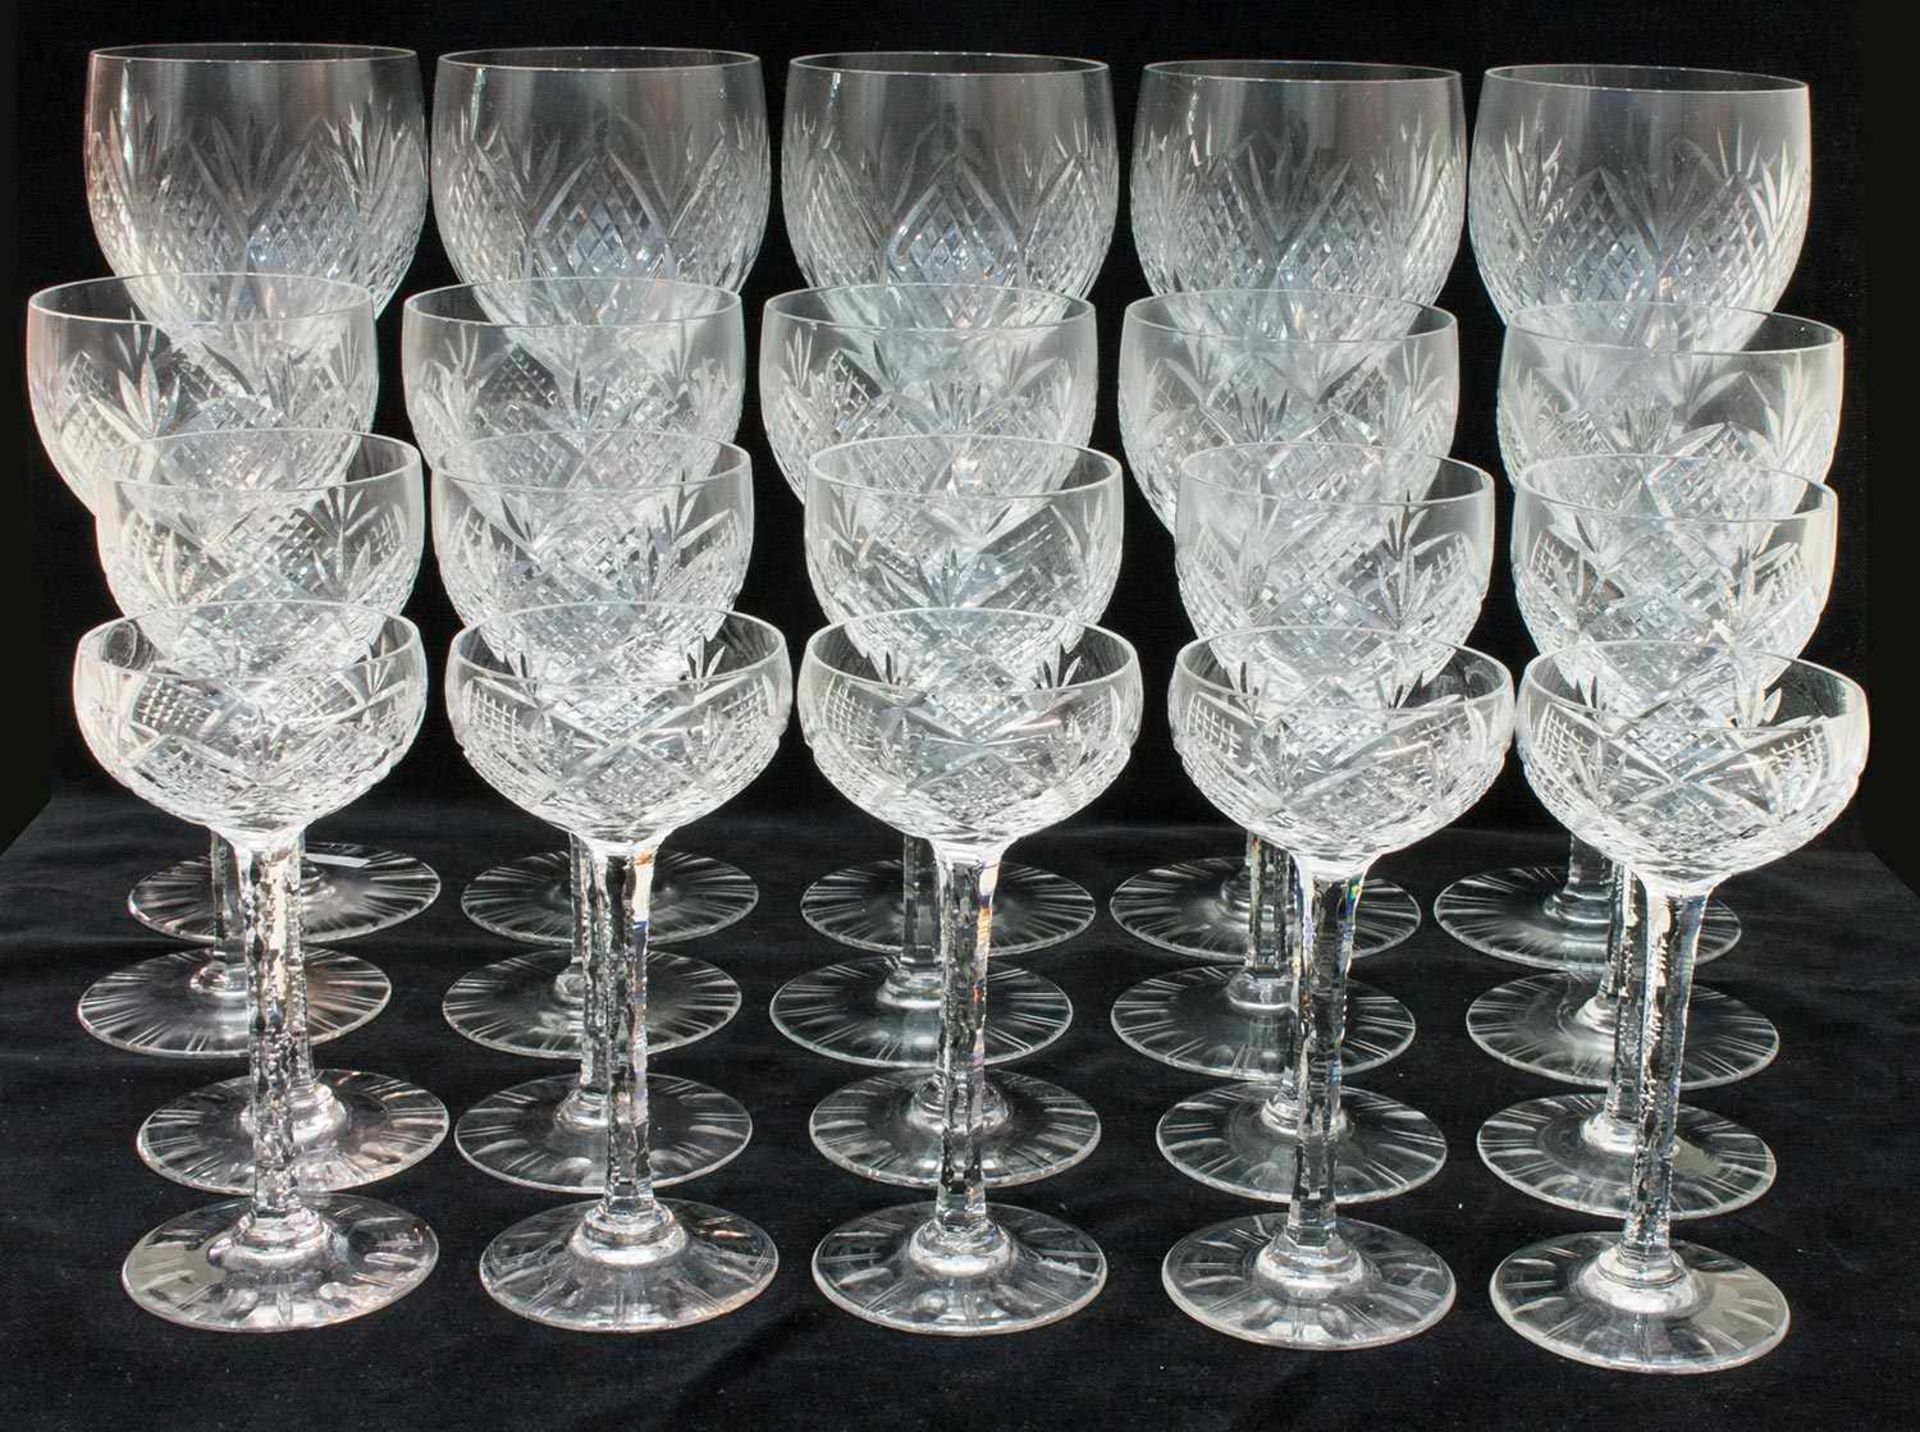 Gläsersatz Kristall, geschliffen, jew. 5 Likörschalen, Sherrygläser, Weißwein- und Rotweingläser, H.